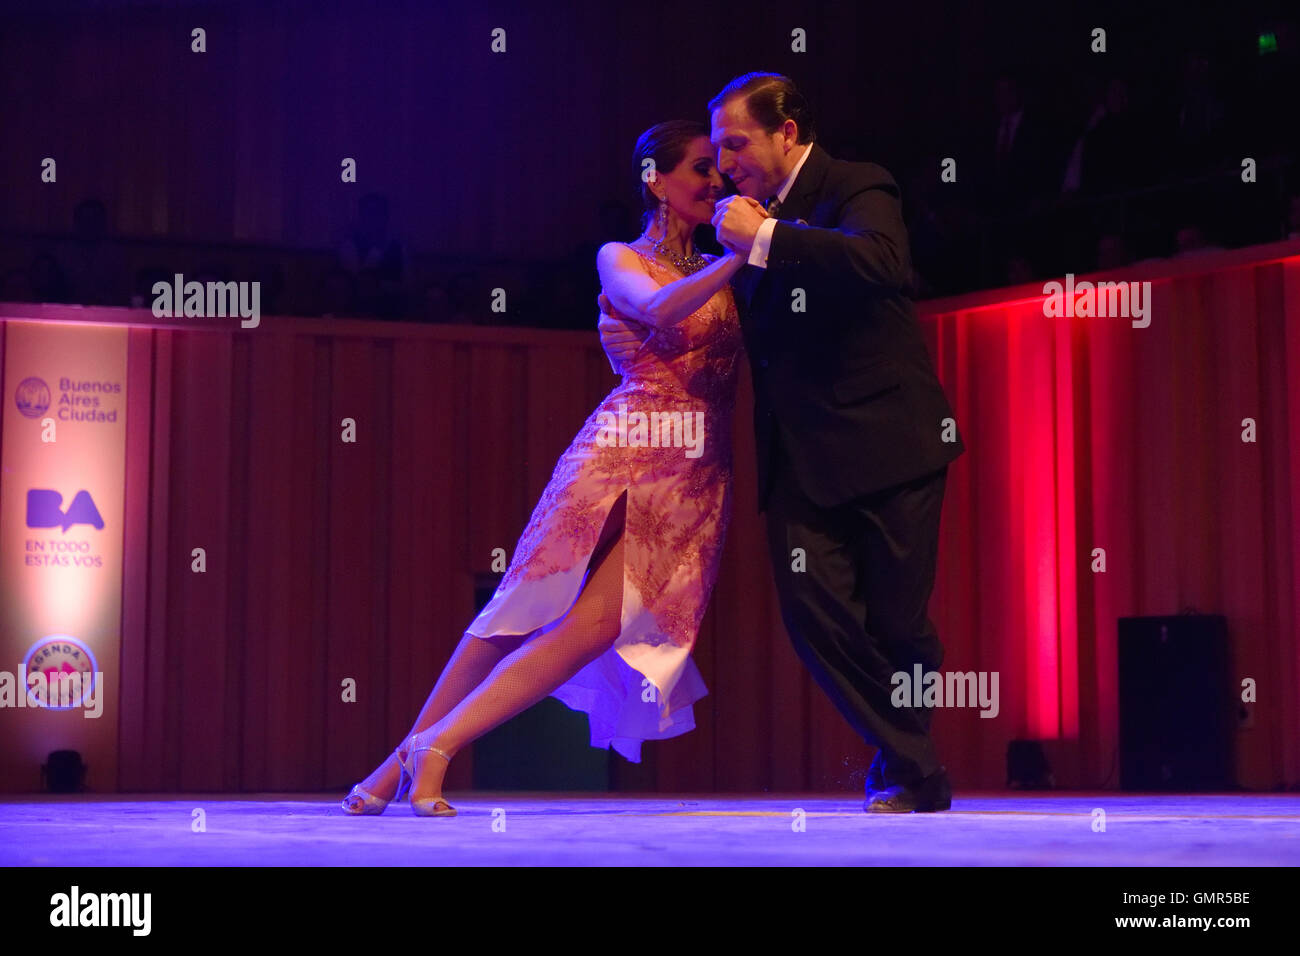 Buenos Aires, Argentina - 14 de mayo de 2016: la pareja realiza durante el Campeonato de Baile de Tango de la ciudad. Foto de stock